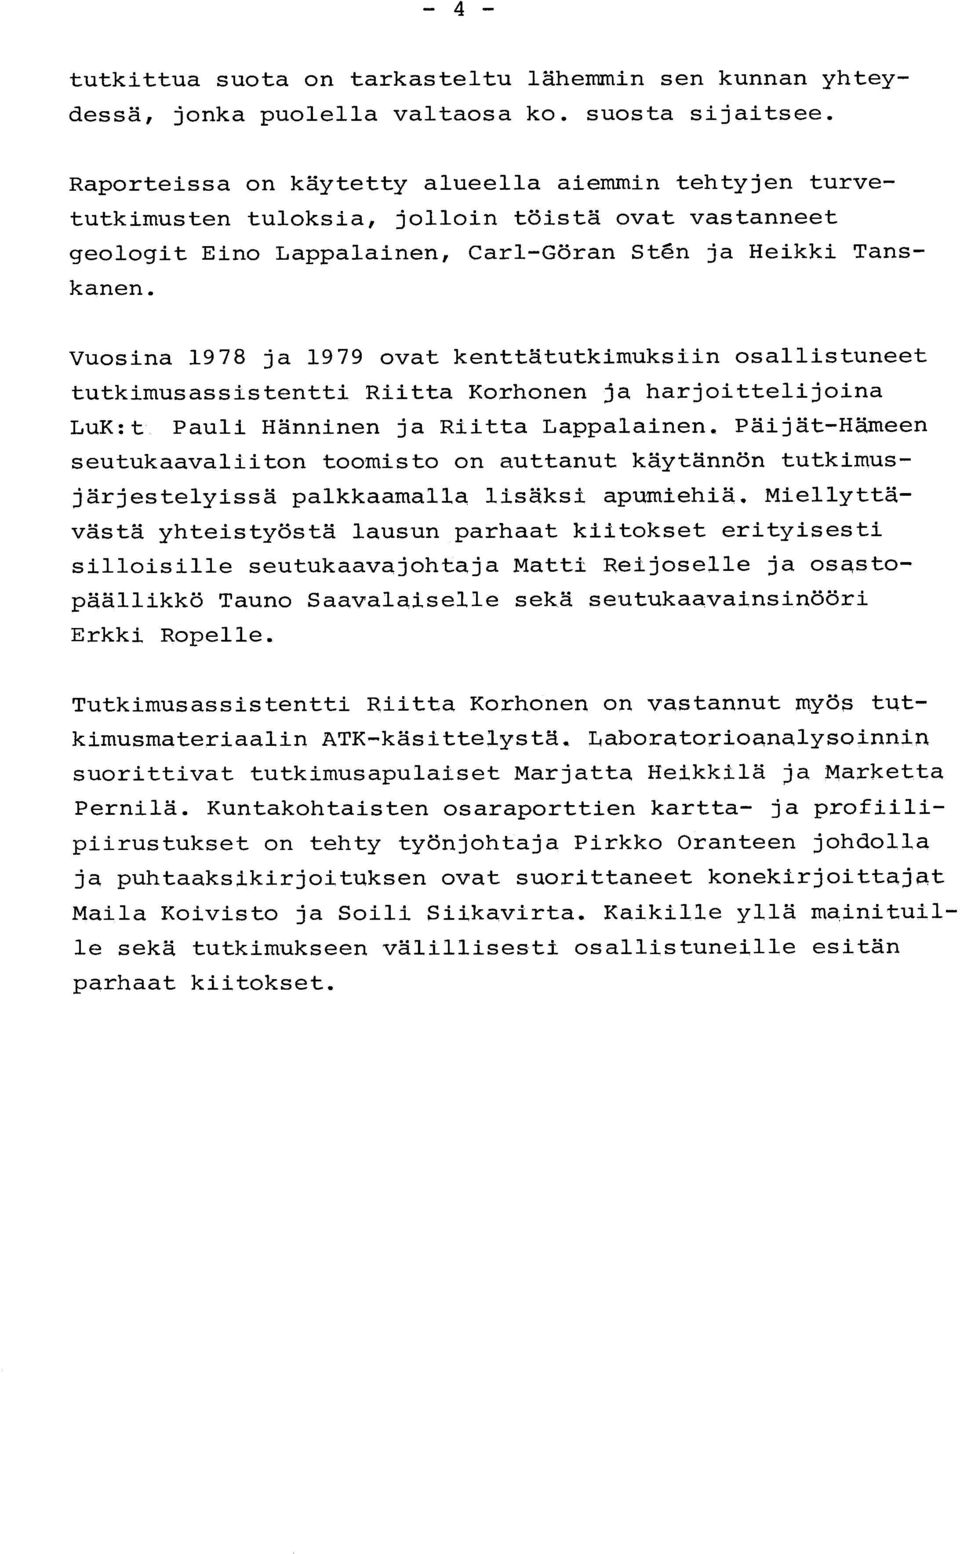 Vuosina 1978 ja 1979 ovat kenttätutkimuksiin osallistuneet tutkimusassistentti Riitta Korhonen ja harjoittelijoin a LuK :t Pauli Hänninen ja Riitta Lappalainen.